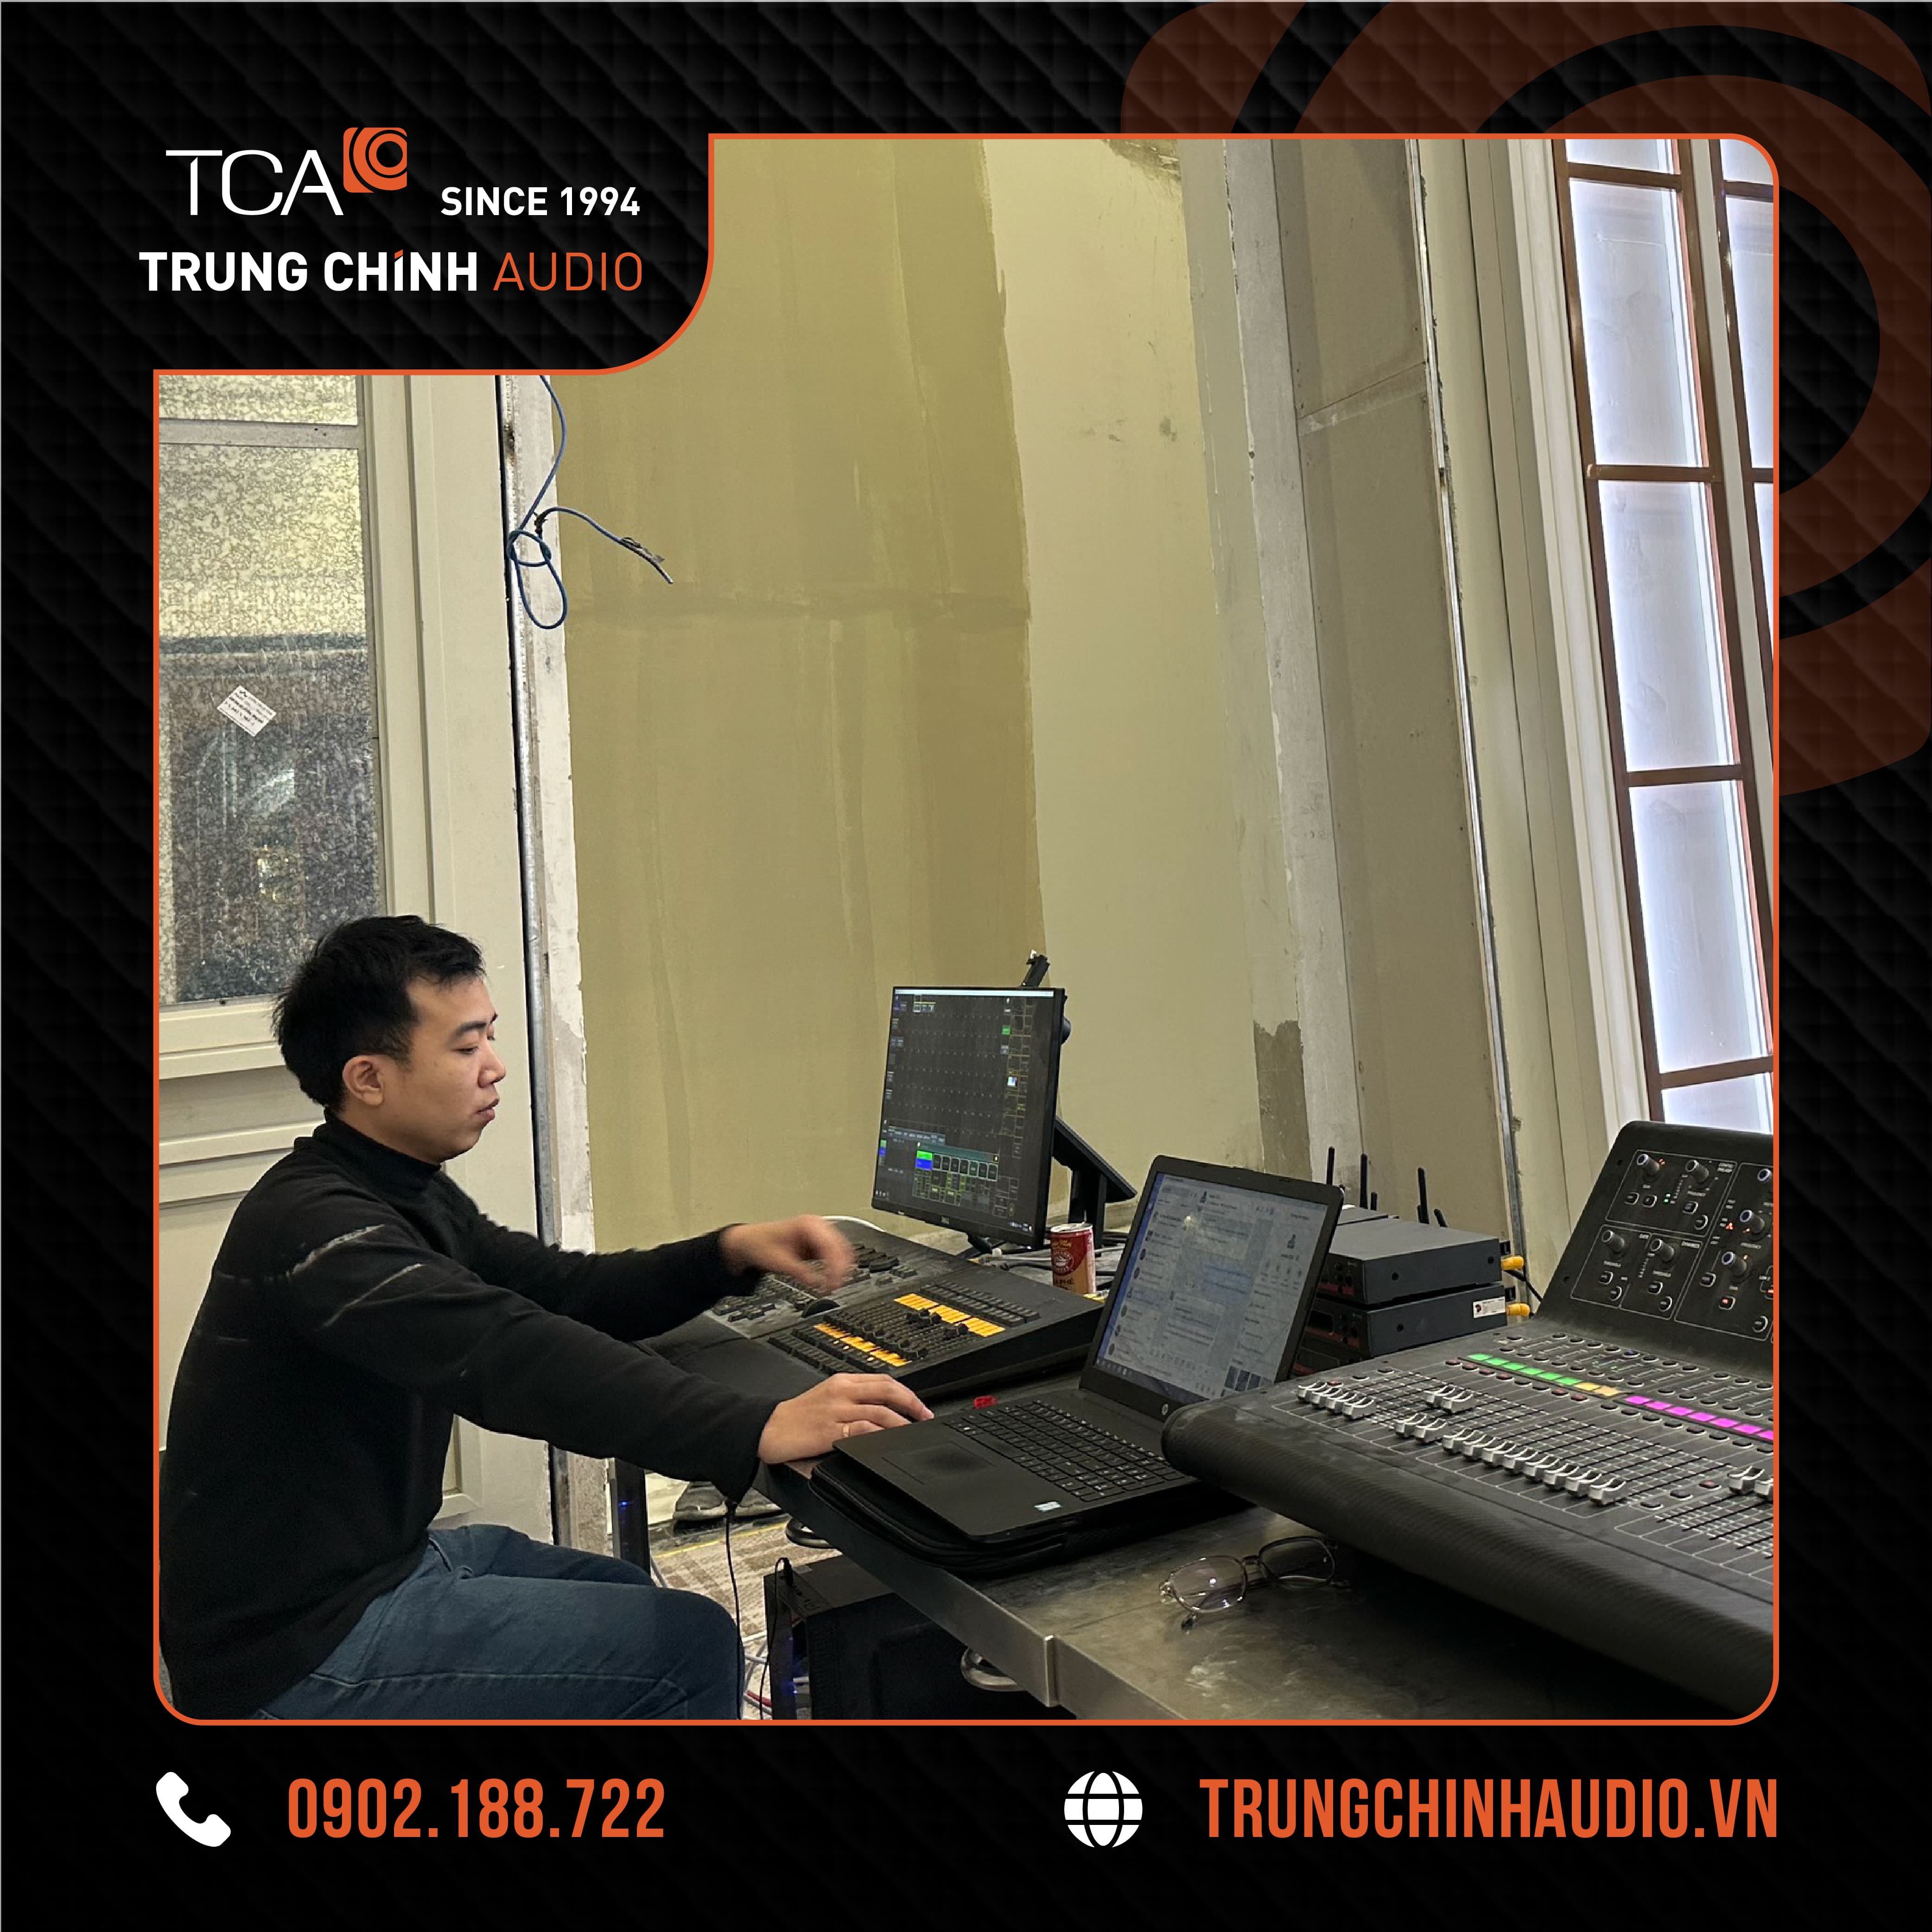 Kỹ thuật viên TCA - Trung Chính Audio đang lắp đặt và cài đặt hệ thống